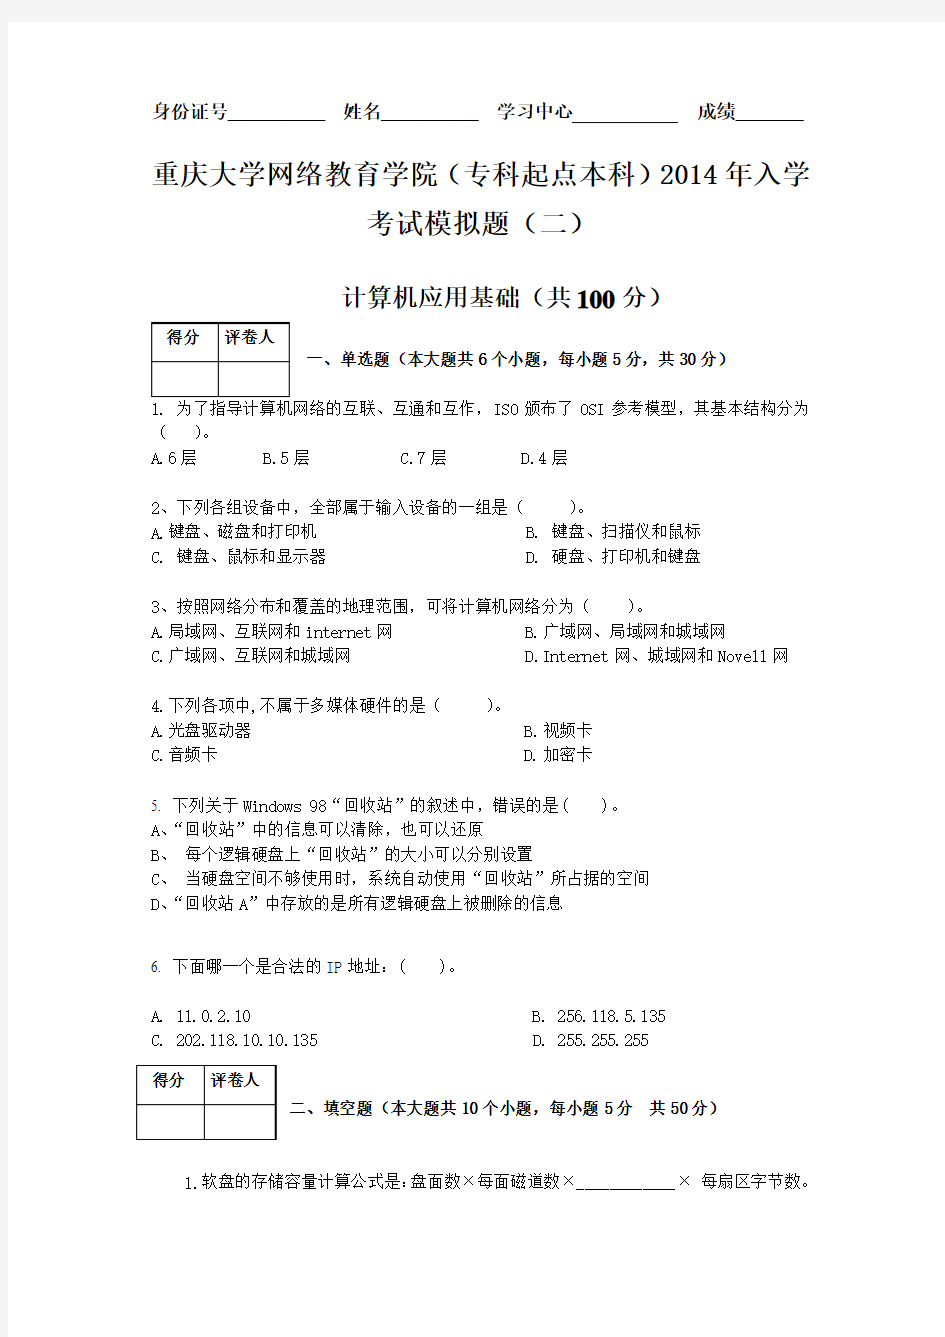 重庆大学网络教育学院(专科起点本科)2014年入学考试模拟题(二)及答案